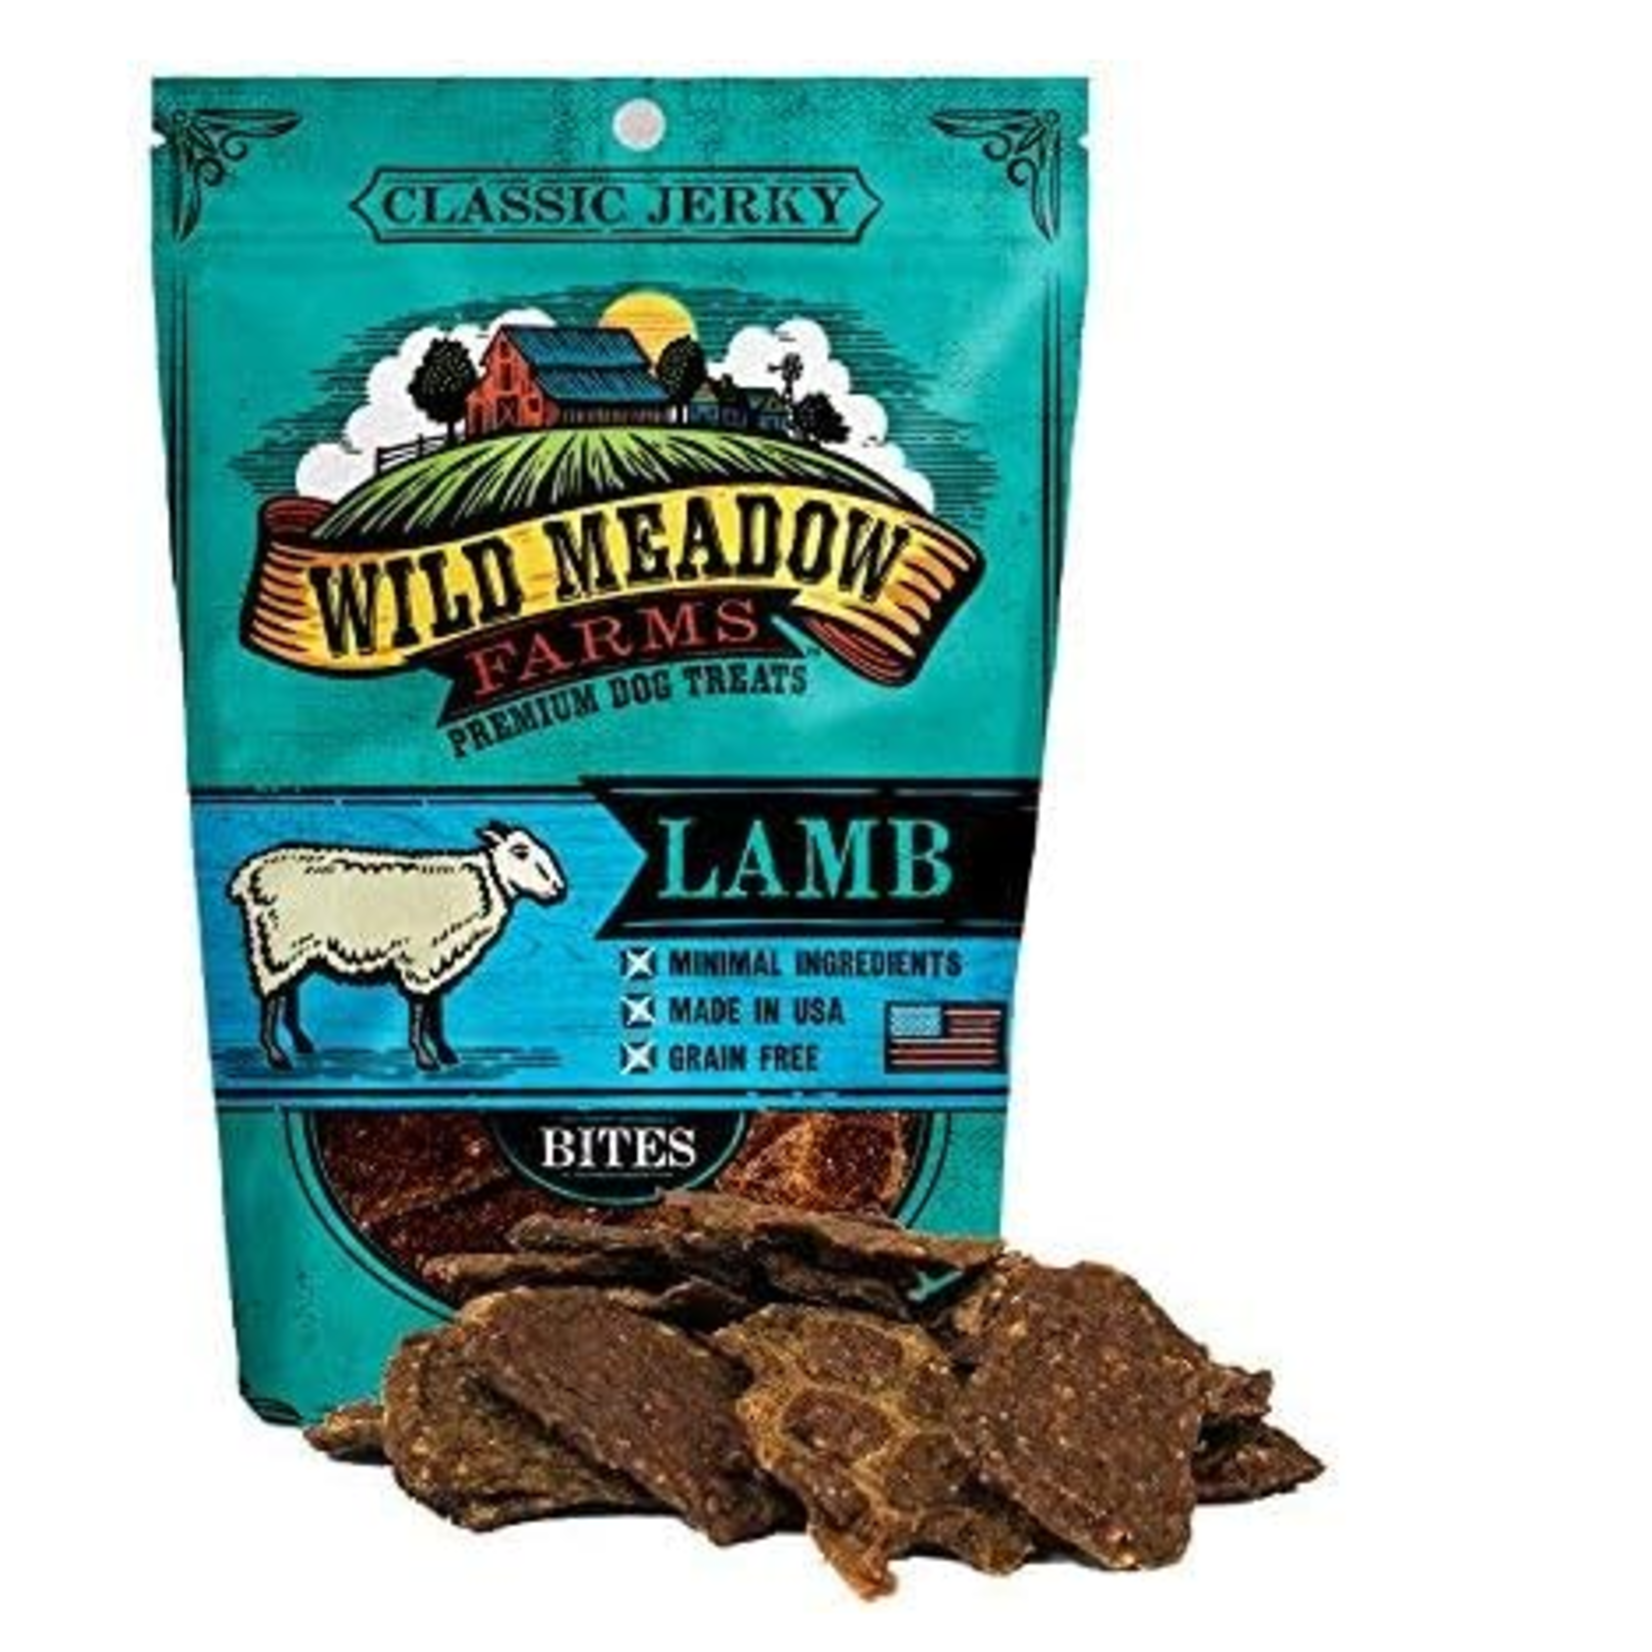 Wild Meadow Farms 4 oz. - Lamb Bites - Semi-Soft Dog Treat - Wild Meadow Farms